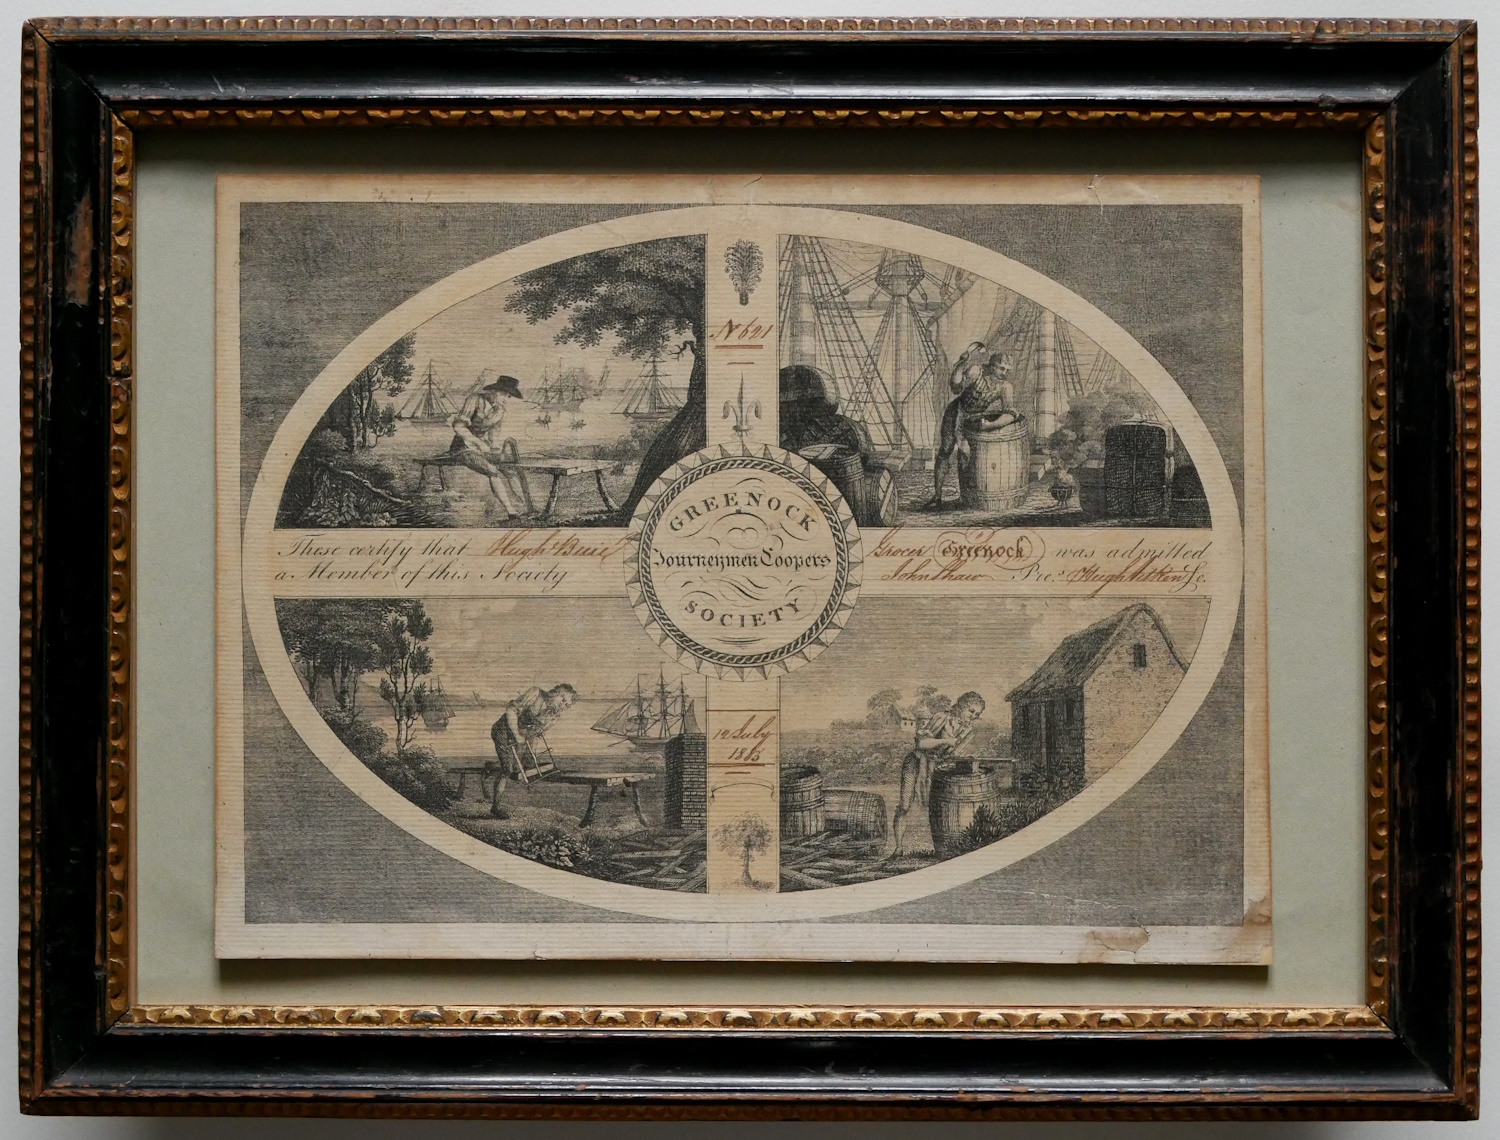 British School 1803 – Greenock Journeymen Coopers Society Certificate